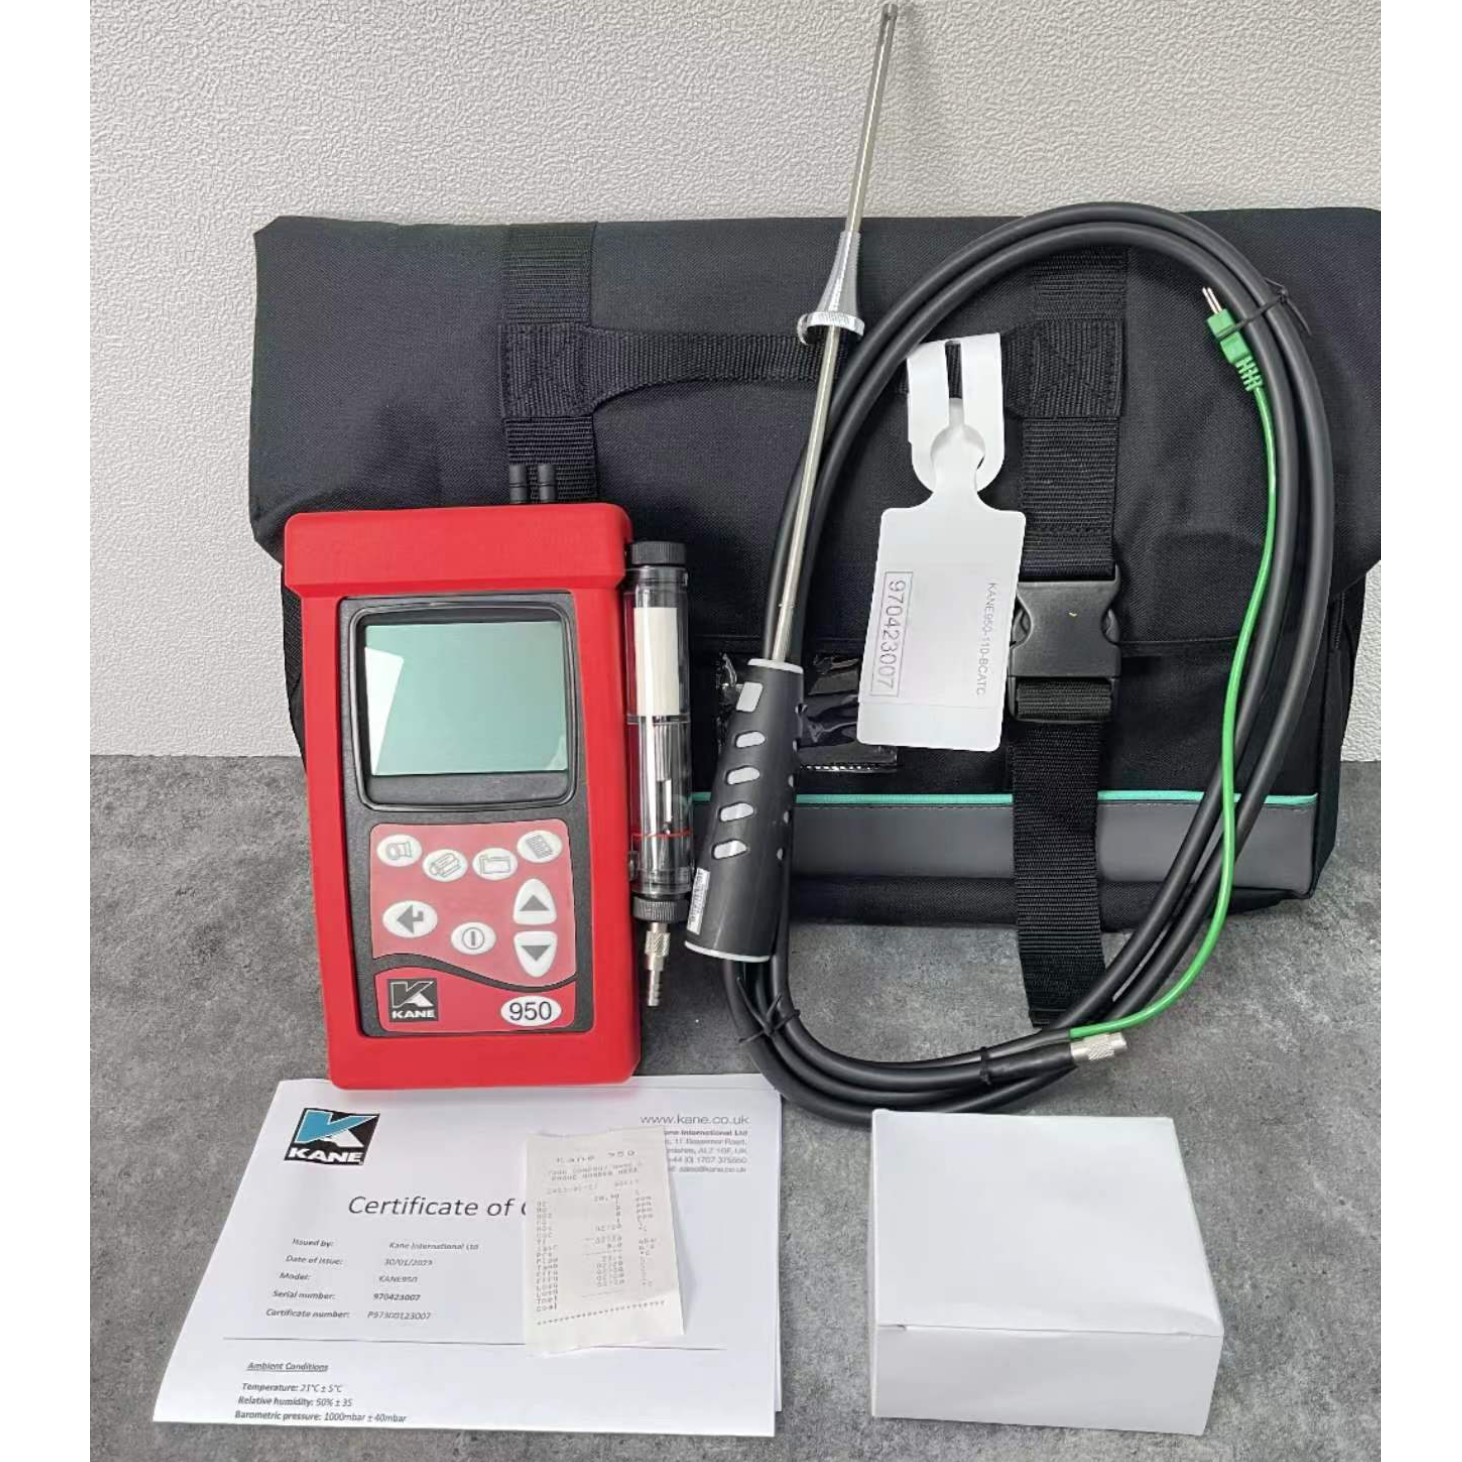 手持式英国凯恩KANE950烟气分析仪氮氧化合物检测仪